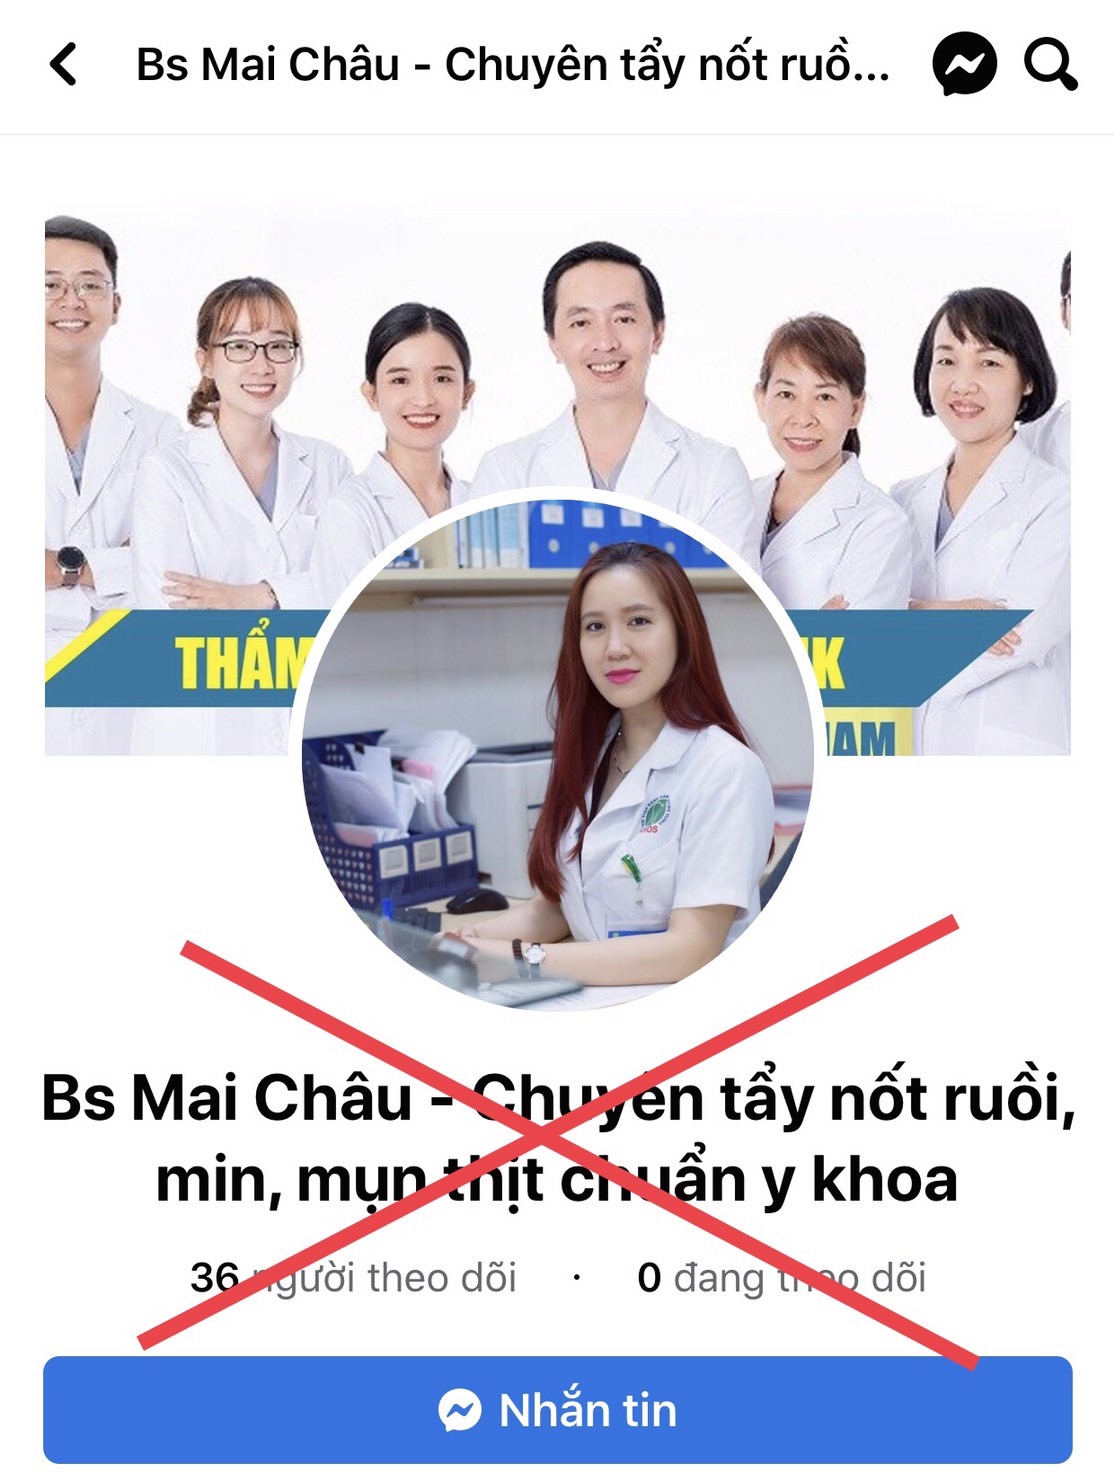 BS CKI Lê Thị Thanh Phương – Khoa Chẩn đoán hình ảnh - Hong Hung Hospital